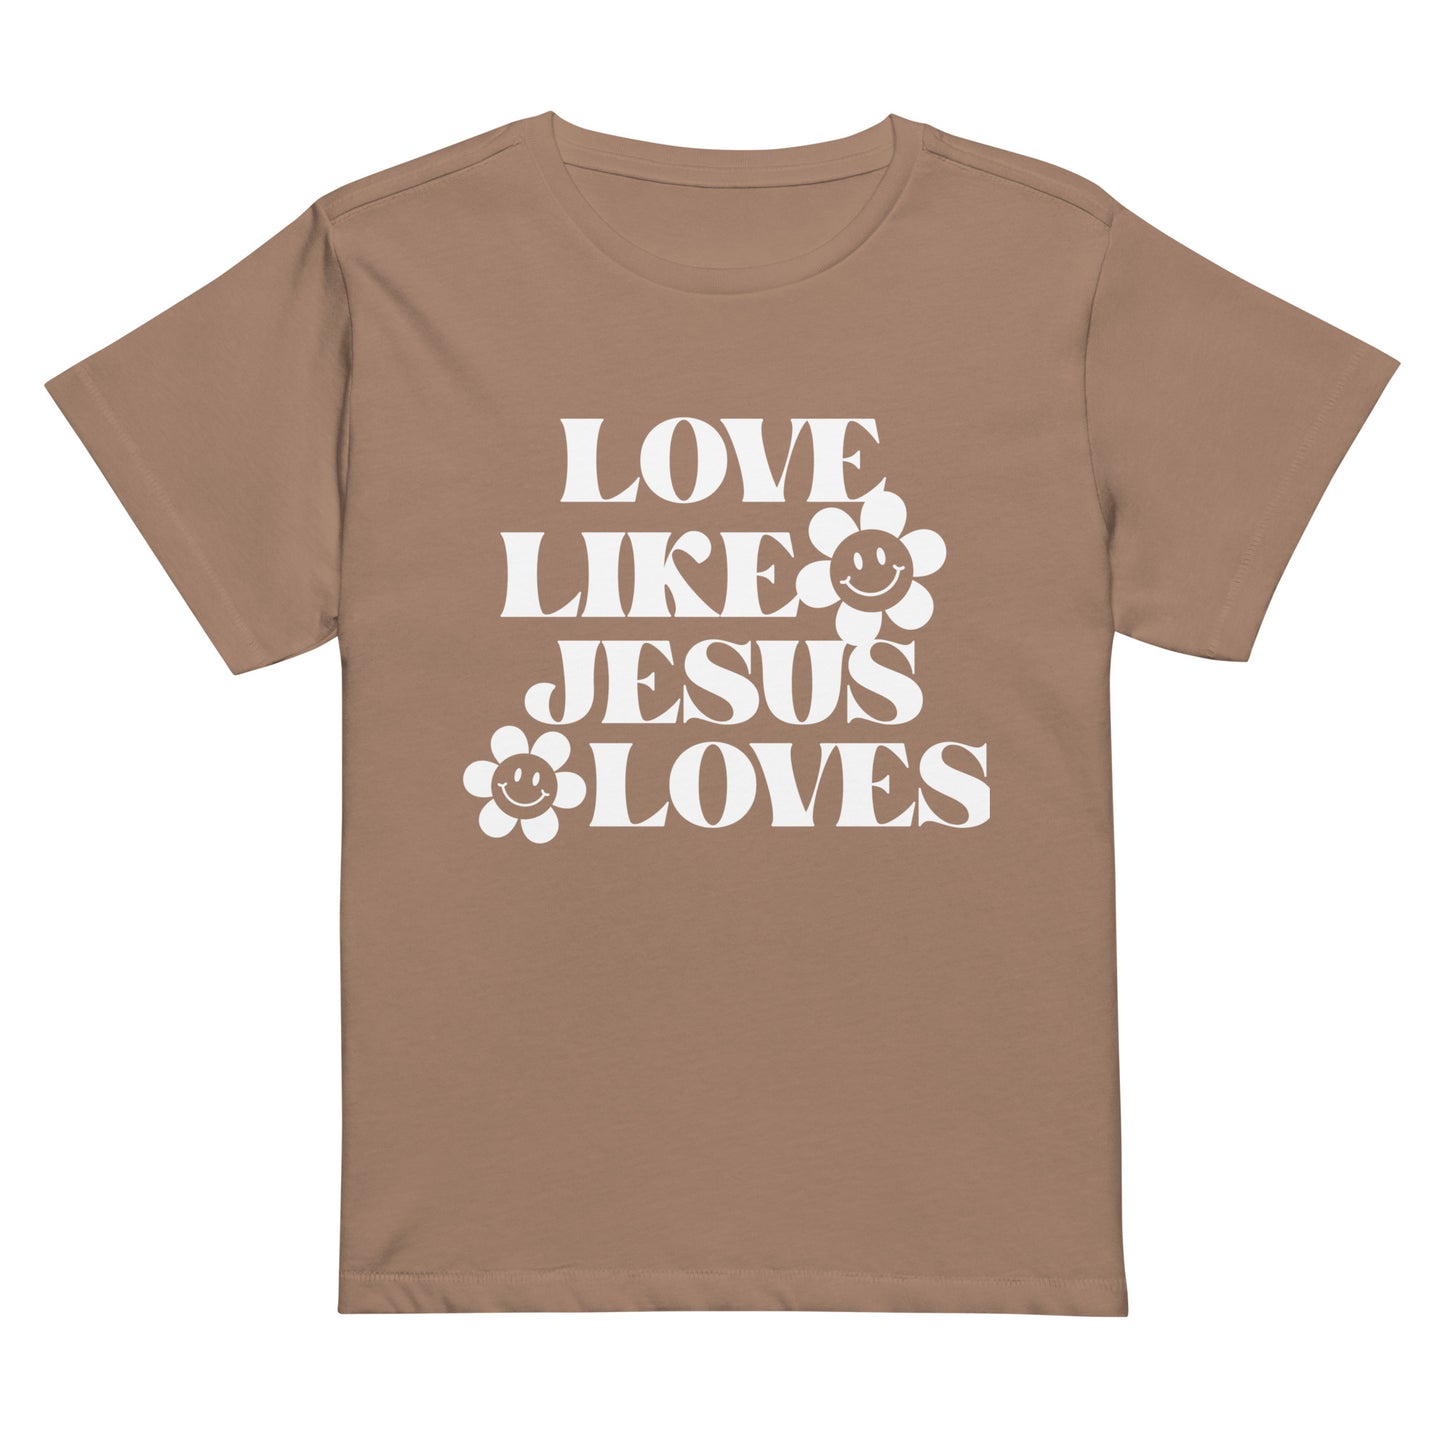 Love Like Jesus Loves - Women’s high-waisted t-shirt